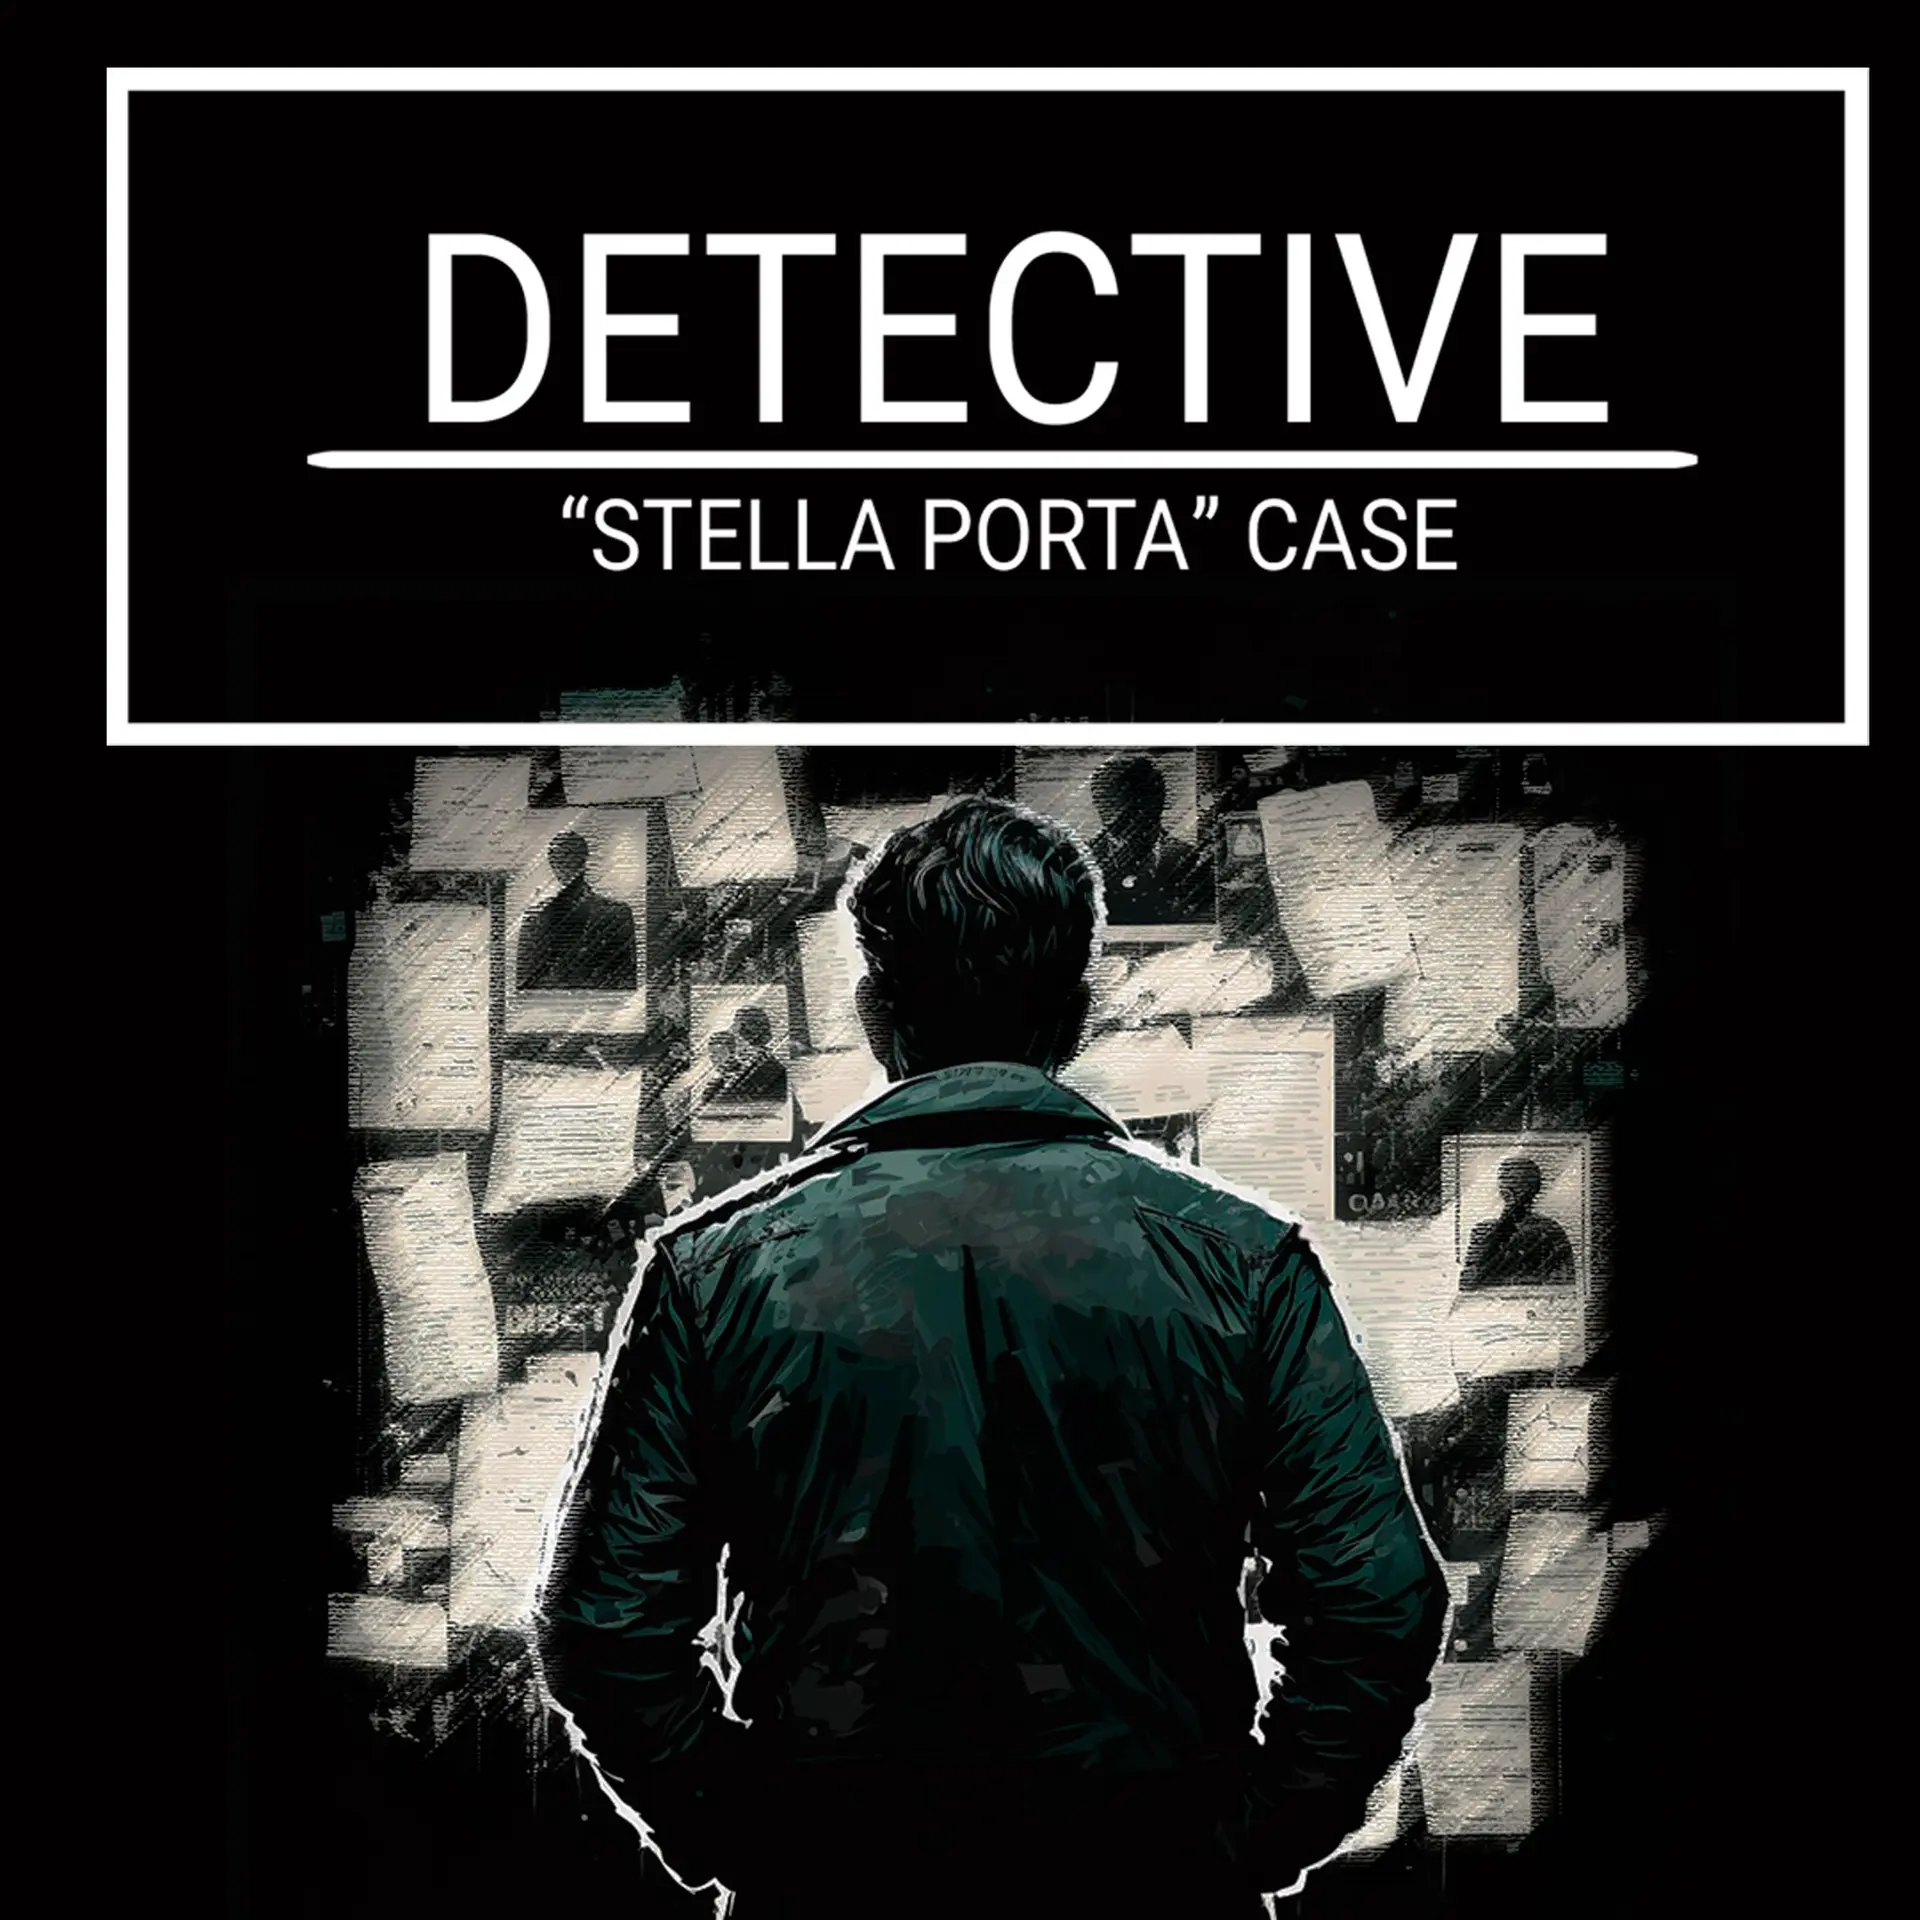 DETECTIVE - Stella Porta case (Xbox Games US)